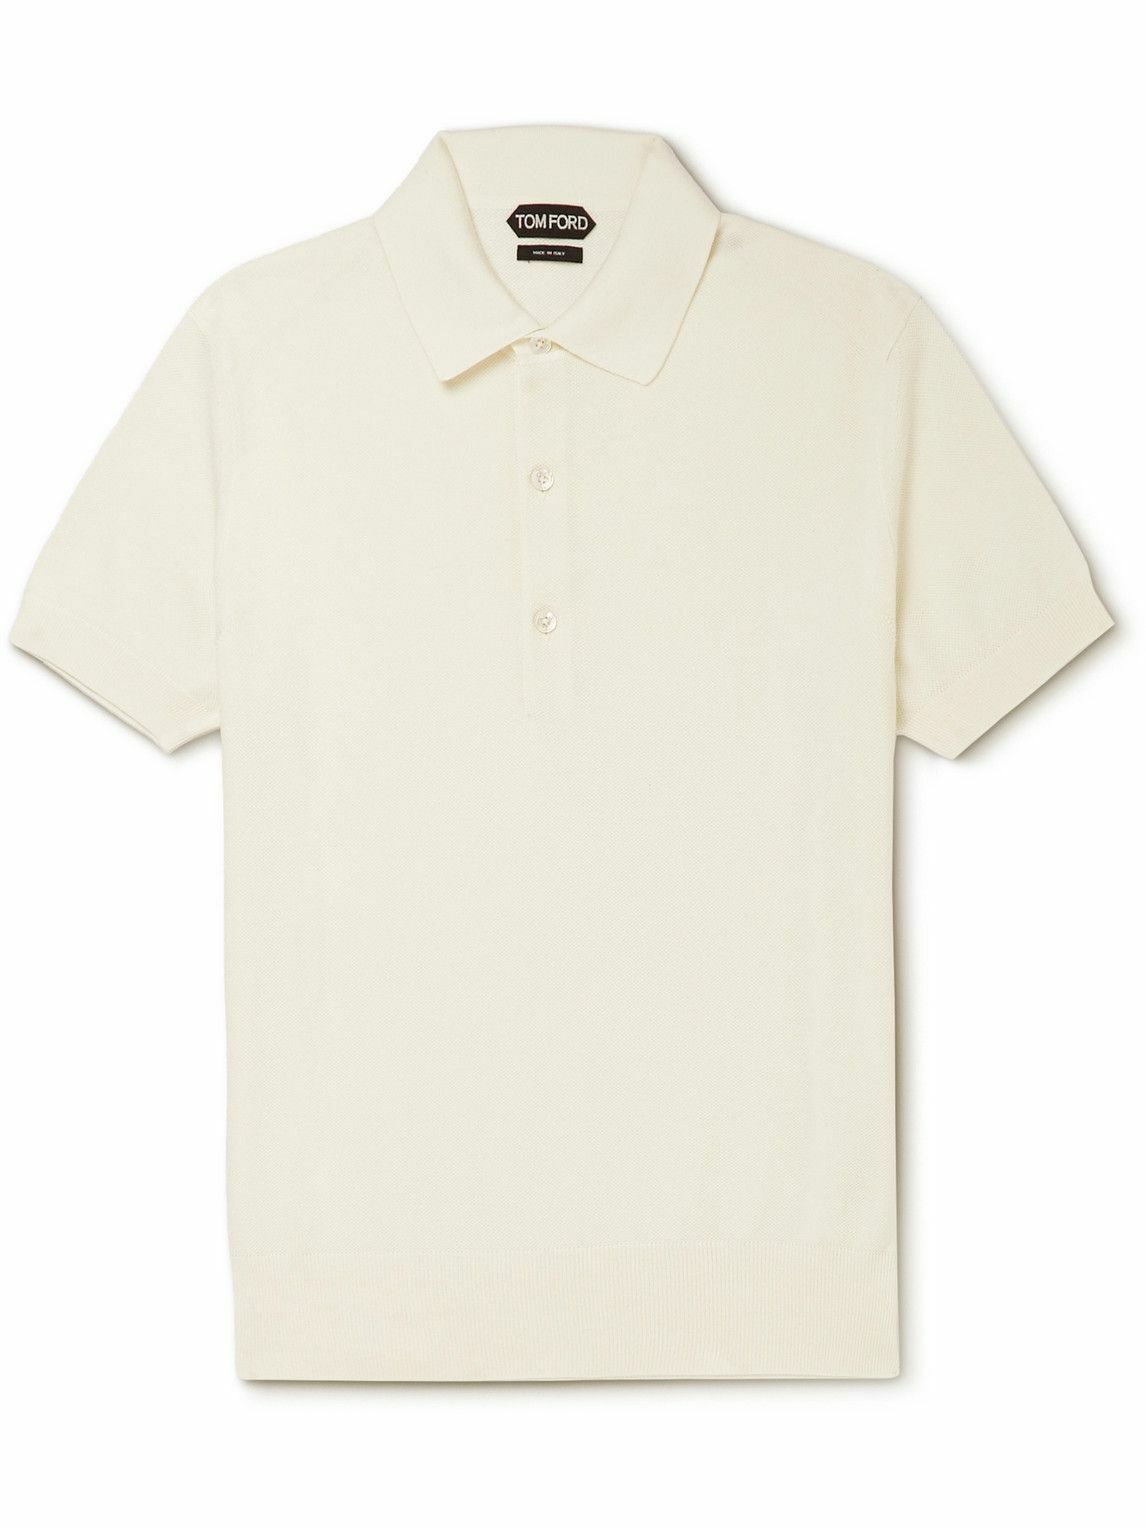 TOM FORD - Silk and Cotton-Blend Piquè Polo Shirt - Neutrals TOM FORD